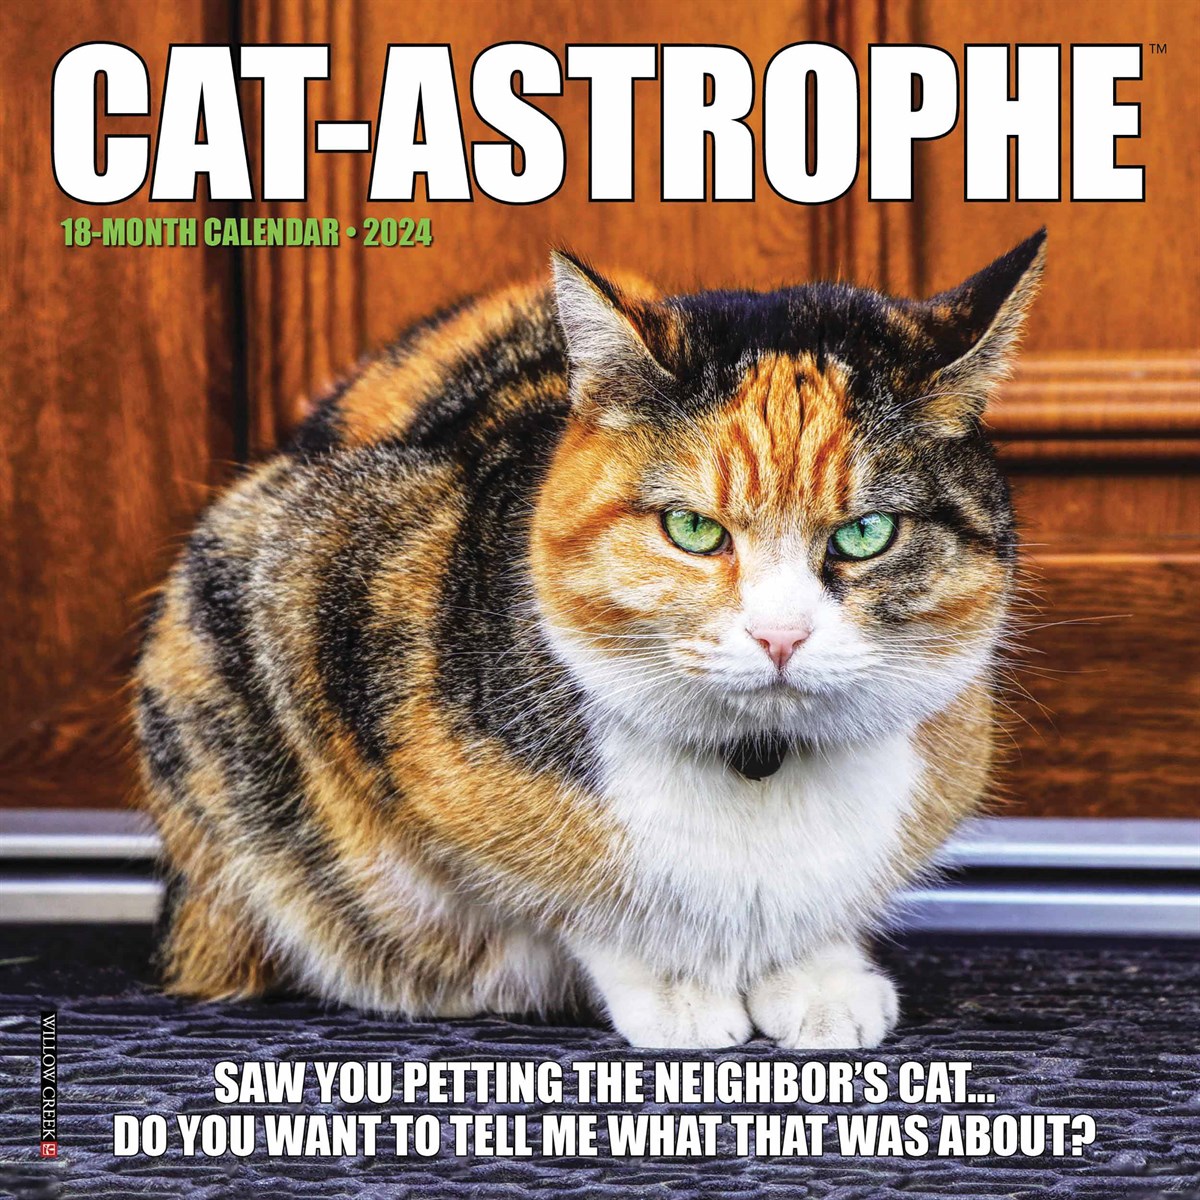 Catastrophe Mini Calendar 2024